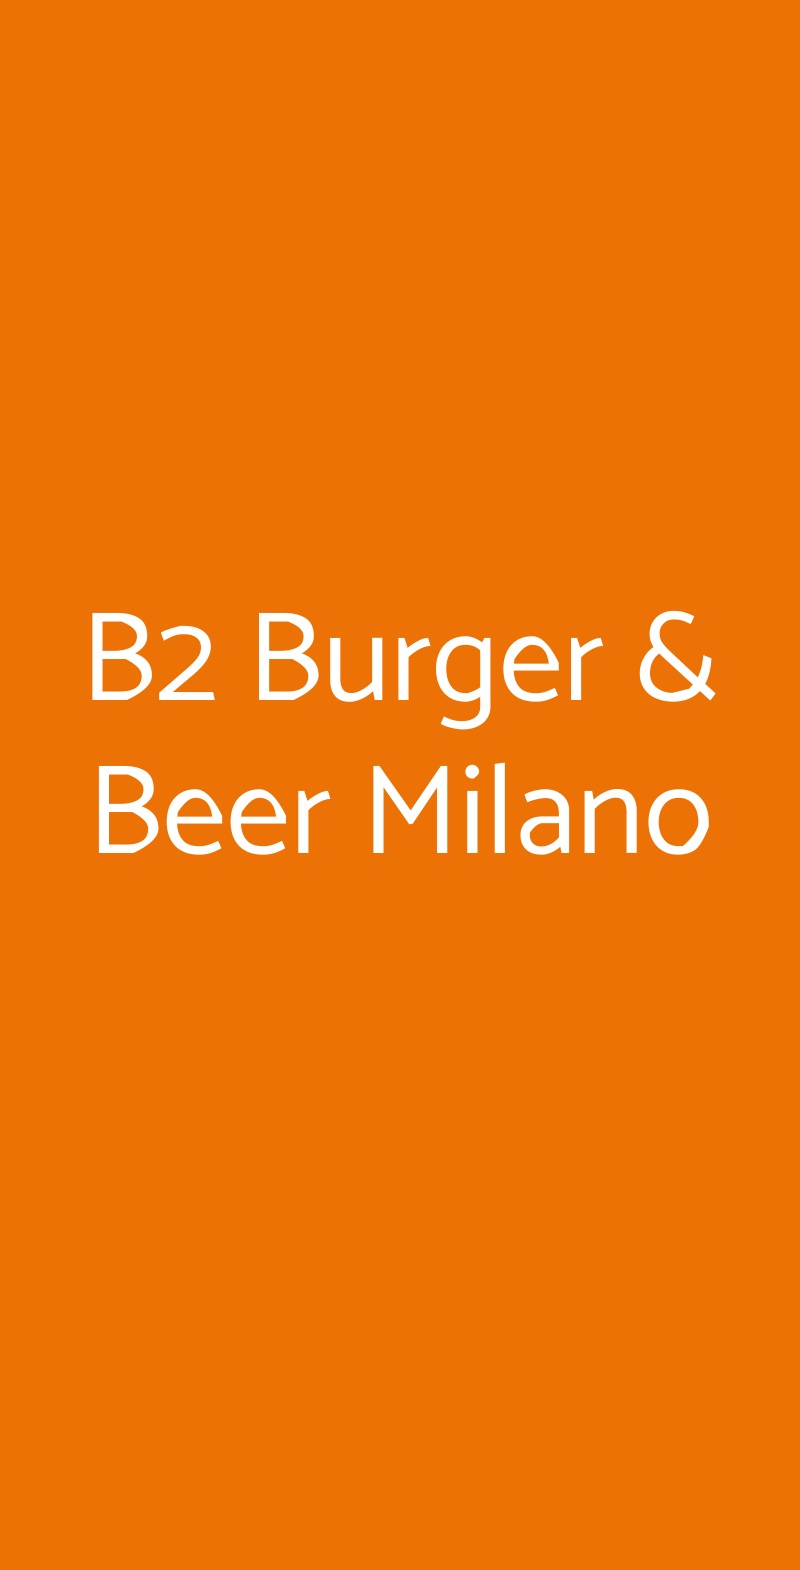 B2 Burger & Beer Milano Milano menù 1 pagina